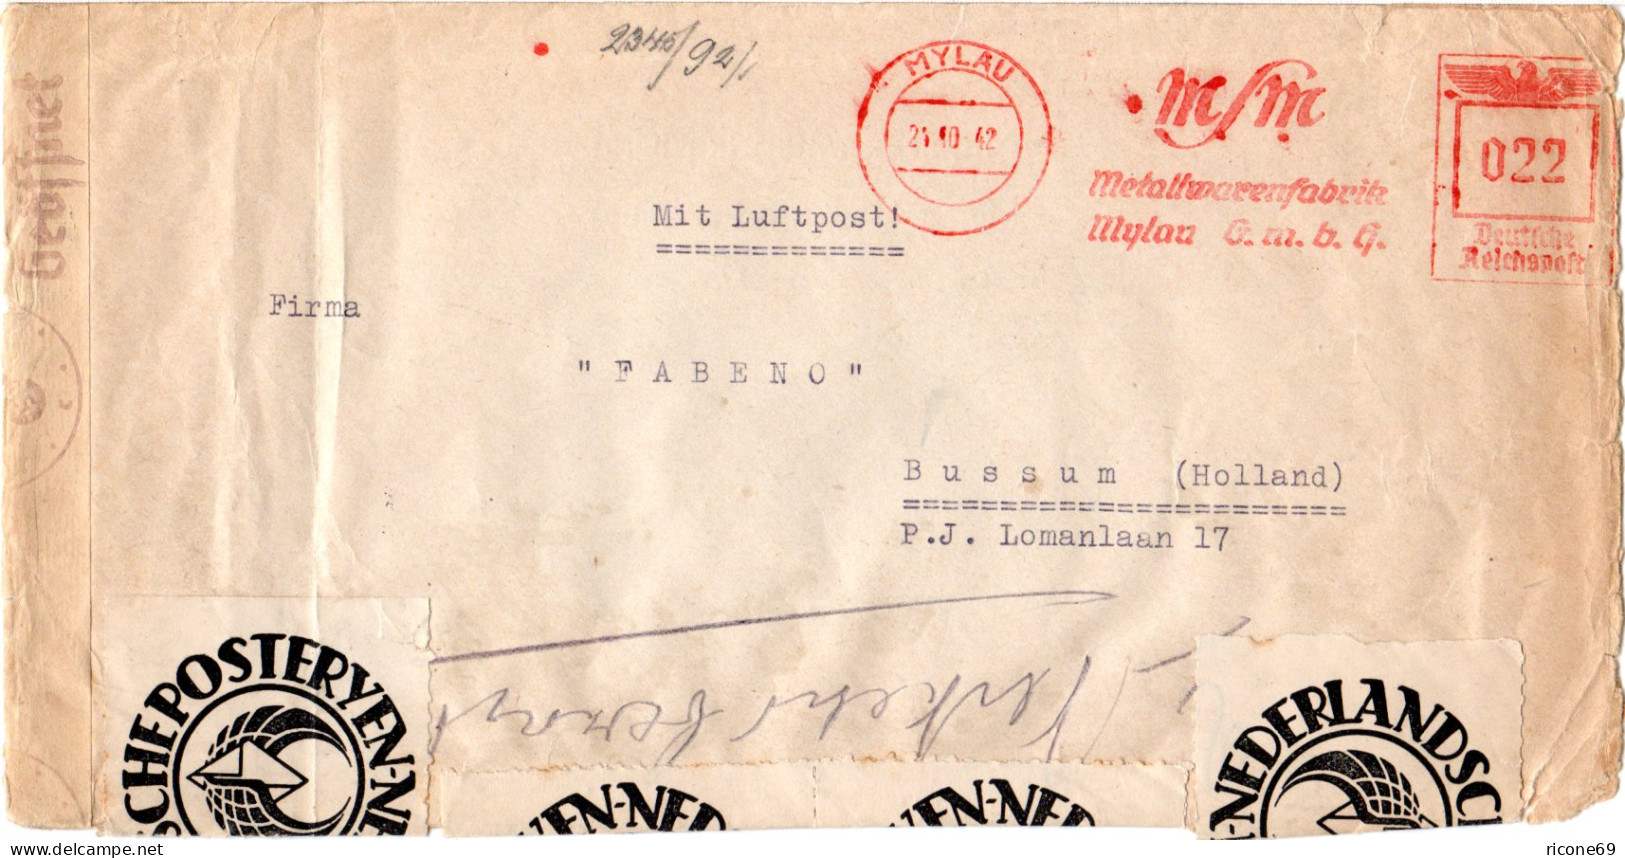 DR 1942, Luftpost Zensur Brief V. Mylau M. NL Post-Verschluss Etiketten - Briefe U. Dokumente